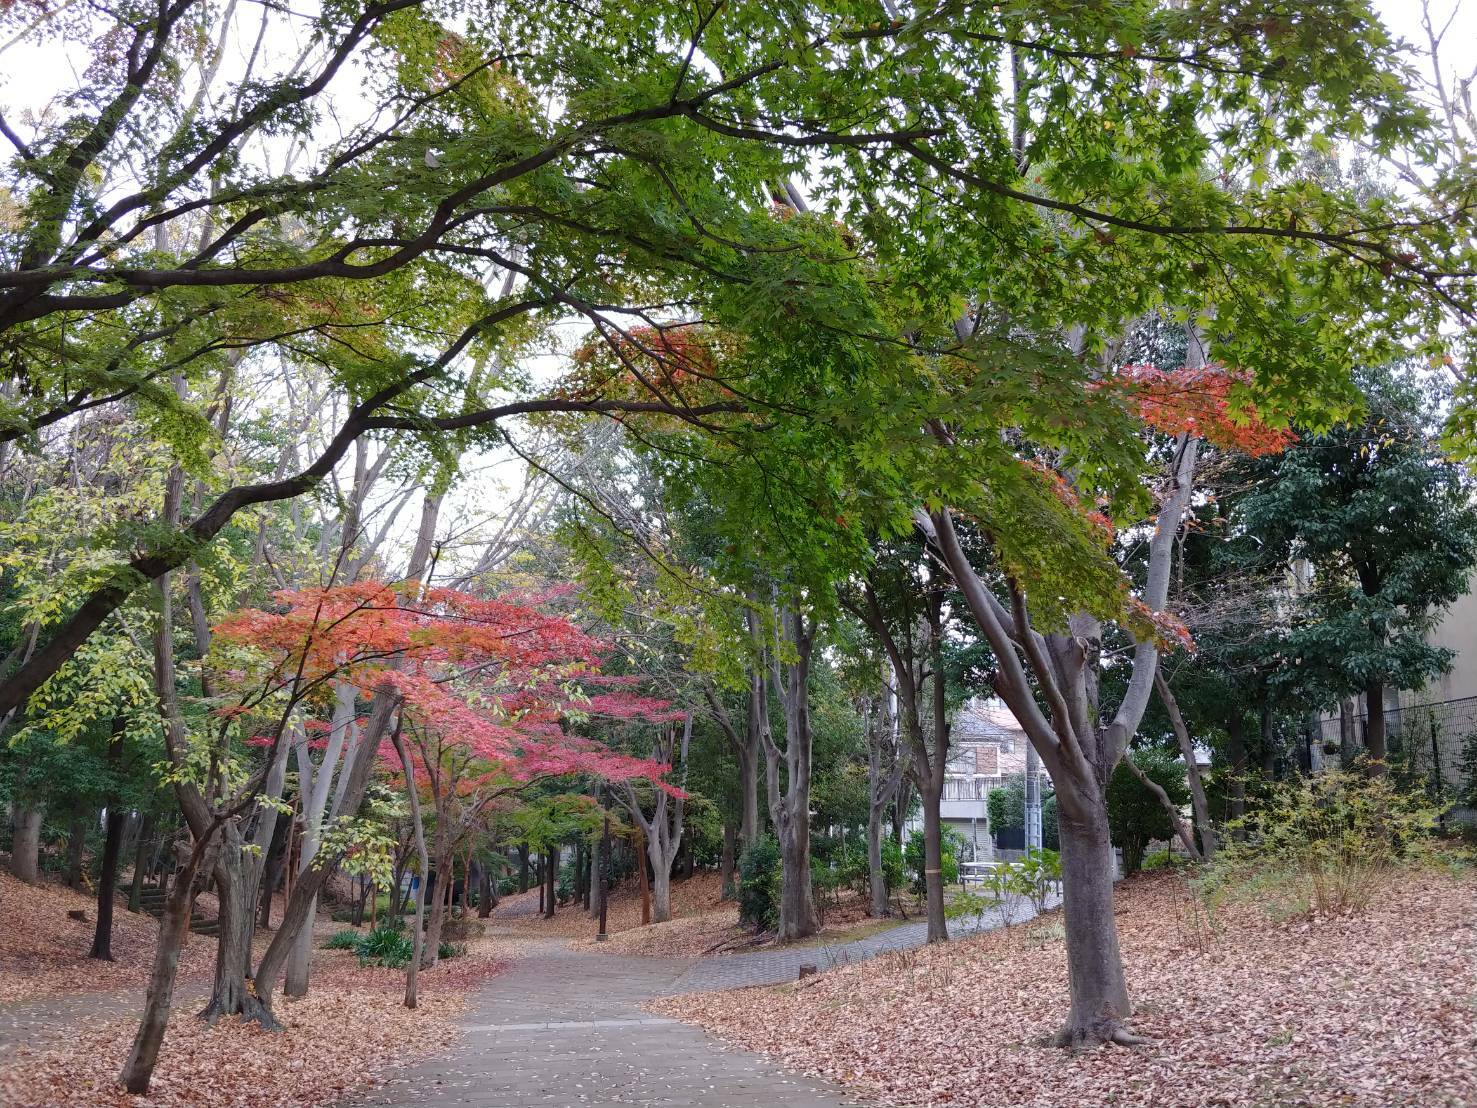 都筑区が誇る緑道です。11月下旬には見事な紅葉を楽しめます。